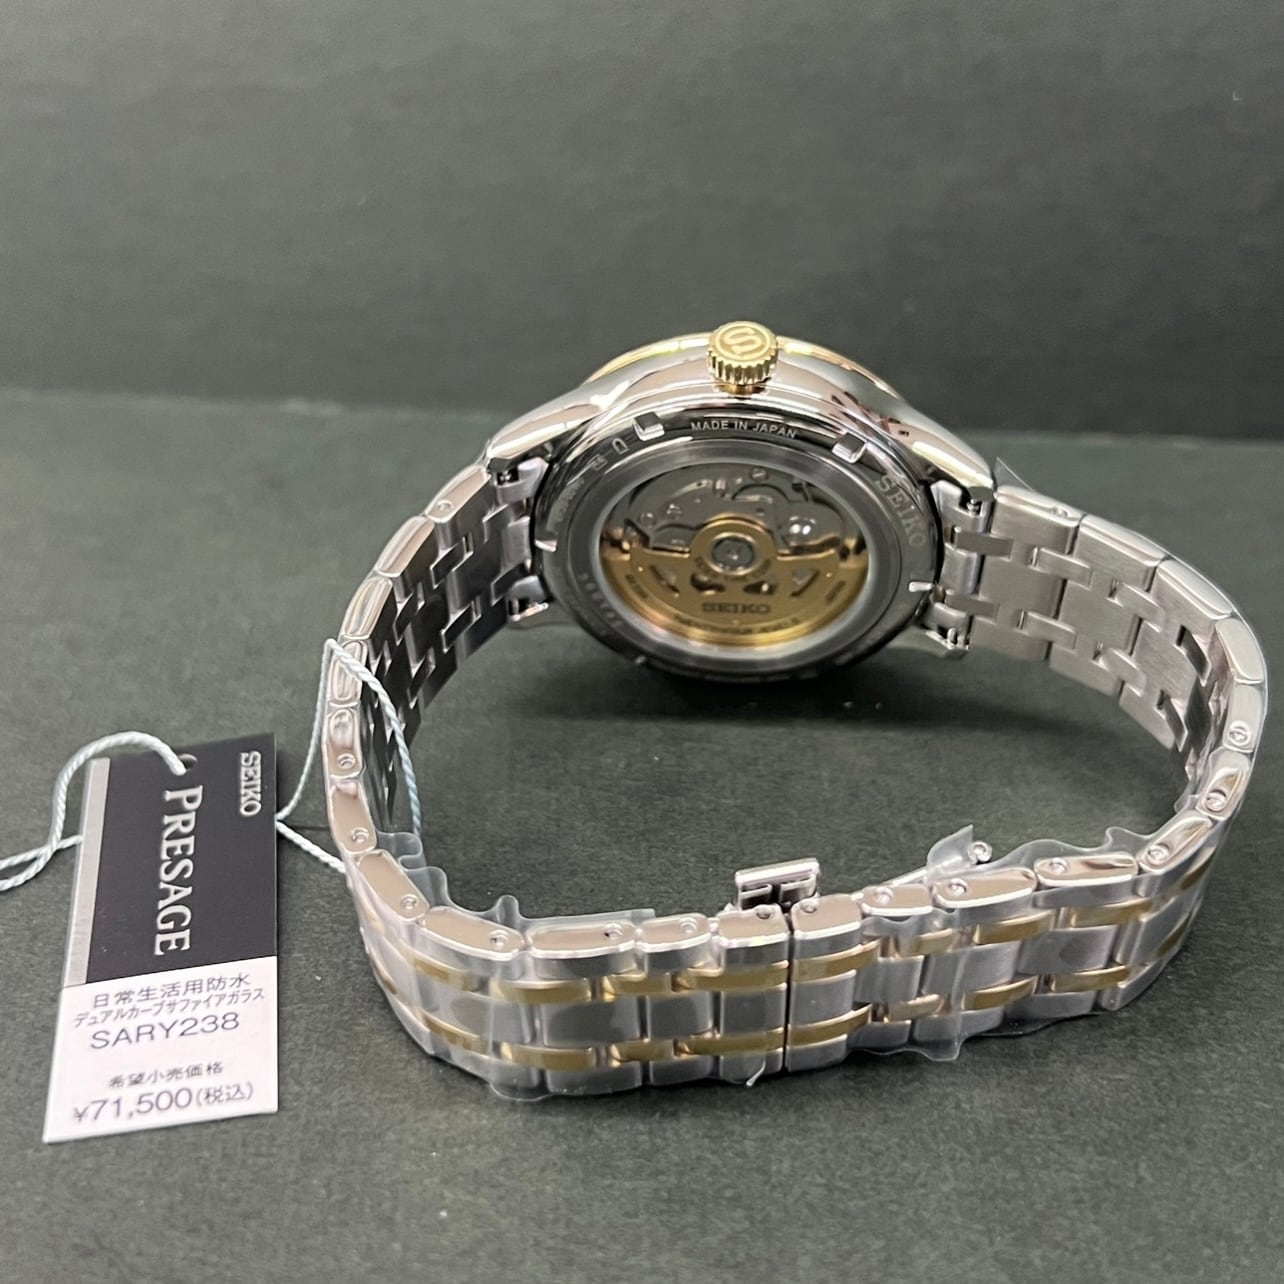 セイコー SEIKO PRESAGE 腕時計 メンズ SARY238 プレザージュ 自動巻き ゴールドxシルバー/ゴールド アナログ表示